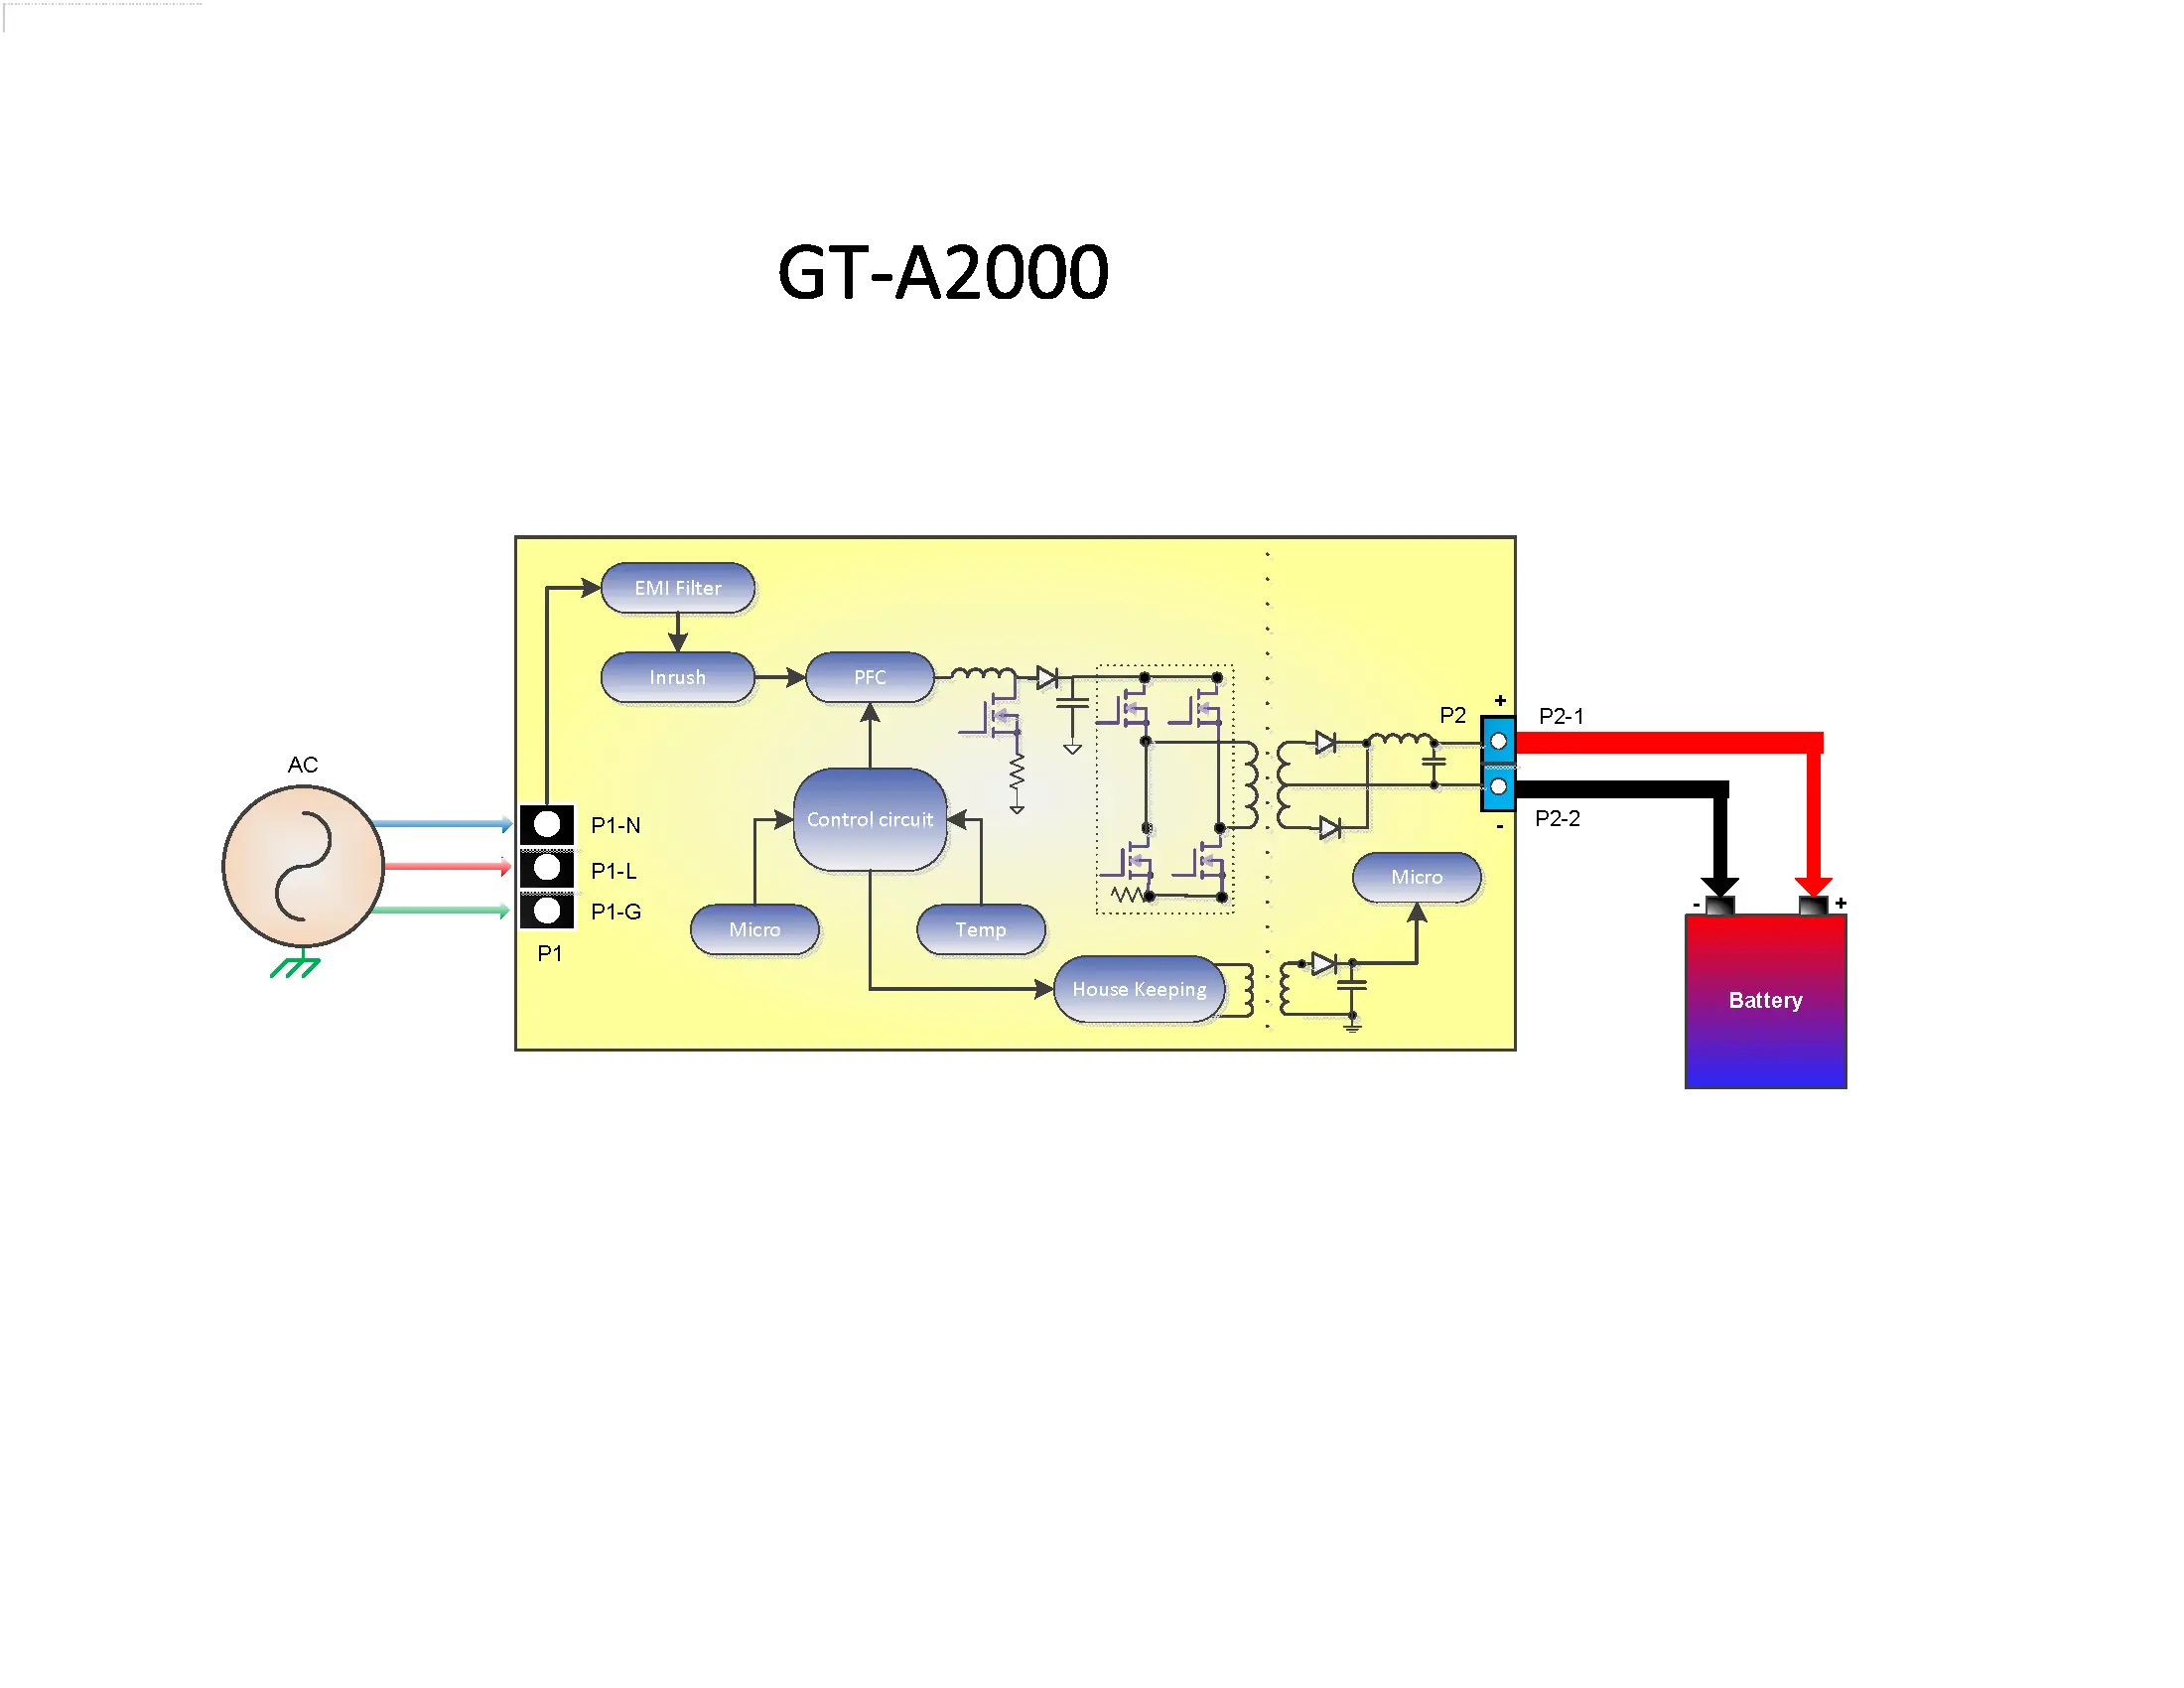 GlobTek présente une nouvelle famille de chargeurs de batterie à haute efficacité de 2 kW (2 000 W), adaptés à plusieurs chimies incluant le plomb-acide, le Li-ion, le LiFePO4 ainsi que les capacités de charge des ultra-condensateurs modernes. La série intègre une technique de charge à tension continue (CC) et à courant continu (CC) à deux étapes et à microprocesseur, et offre une entrée CA universelle avec PFC actif et un choix standard de protocoles de communication CANBus/RS485/RS422. 
